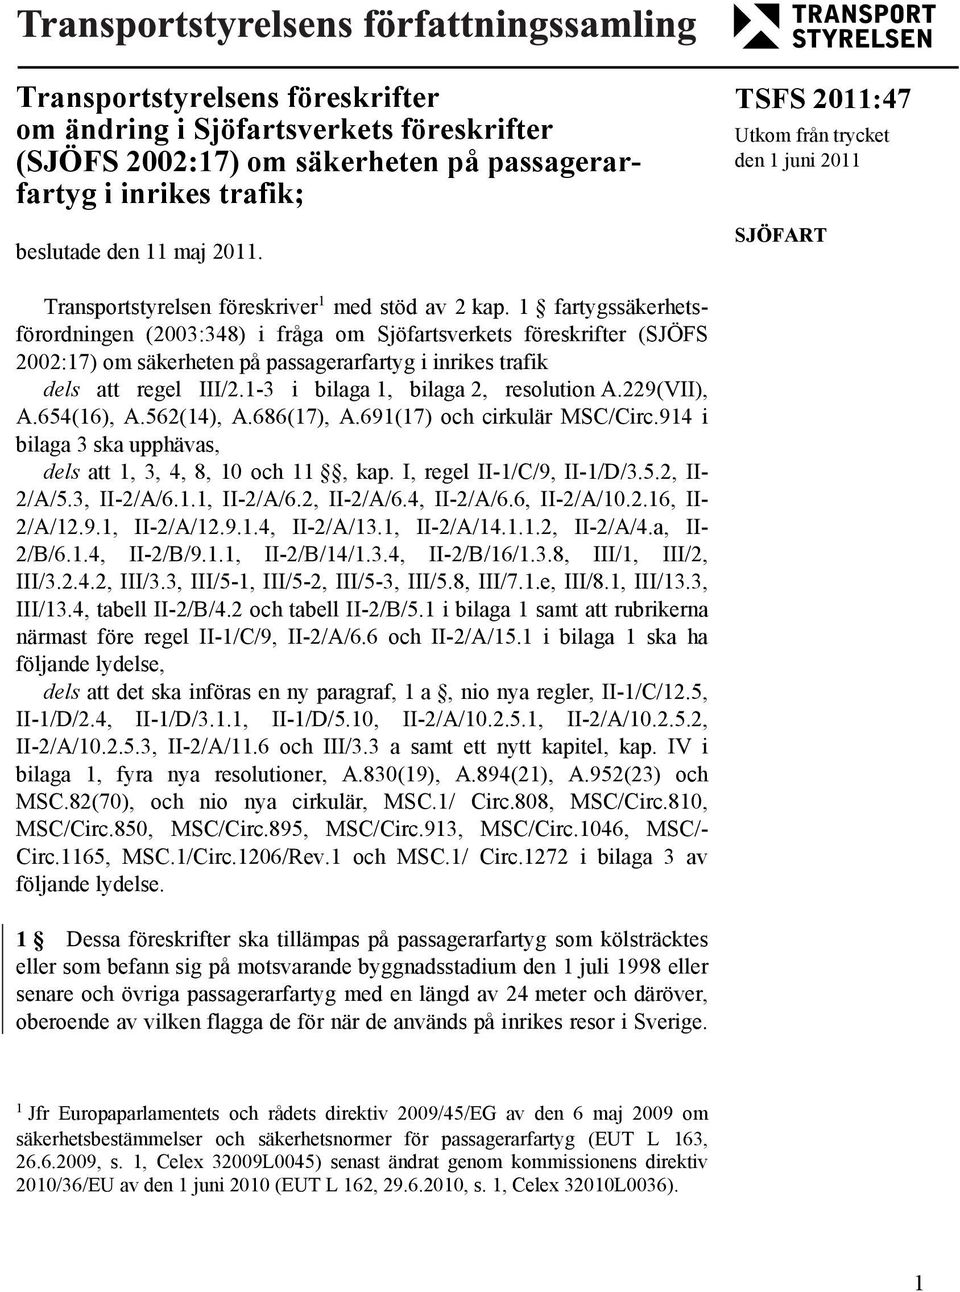 1 fartygssäkerhetsförordningen (2003:348) i fråga om Sjöfartsverkets föreskrifter (SJÖFS 2002:17) om säkerheten på passagerarfartyg i inrikes trafik dels att regel III/2.